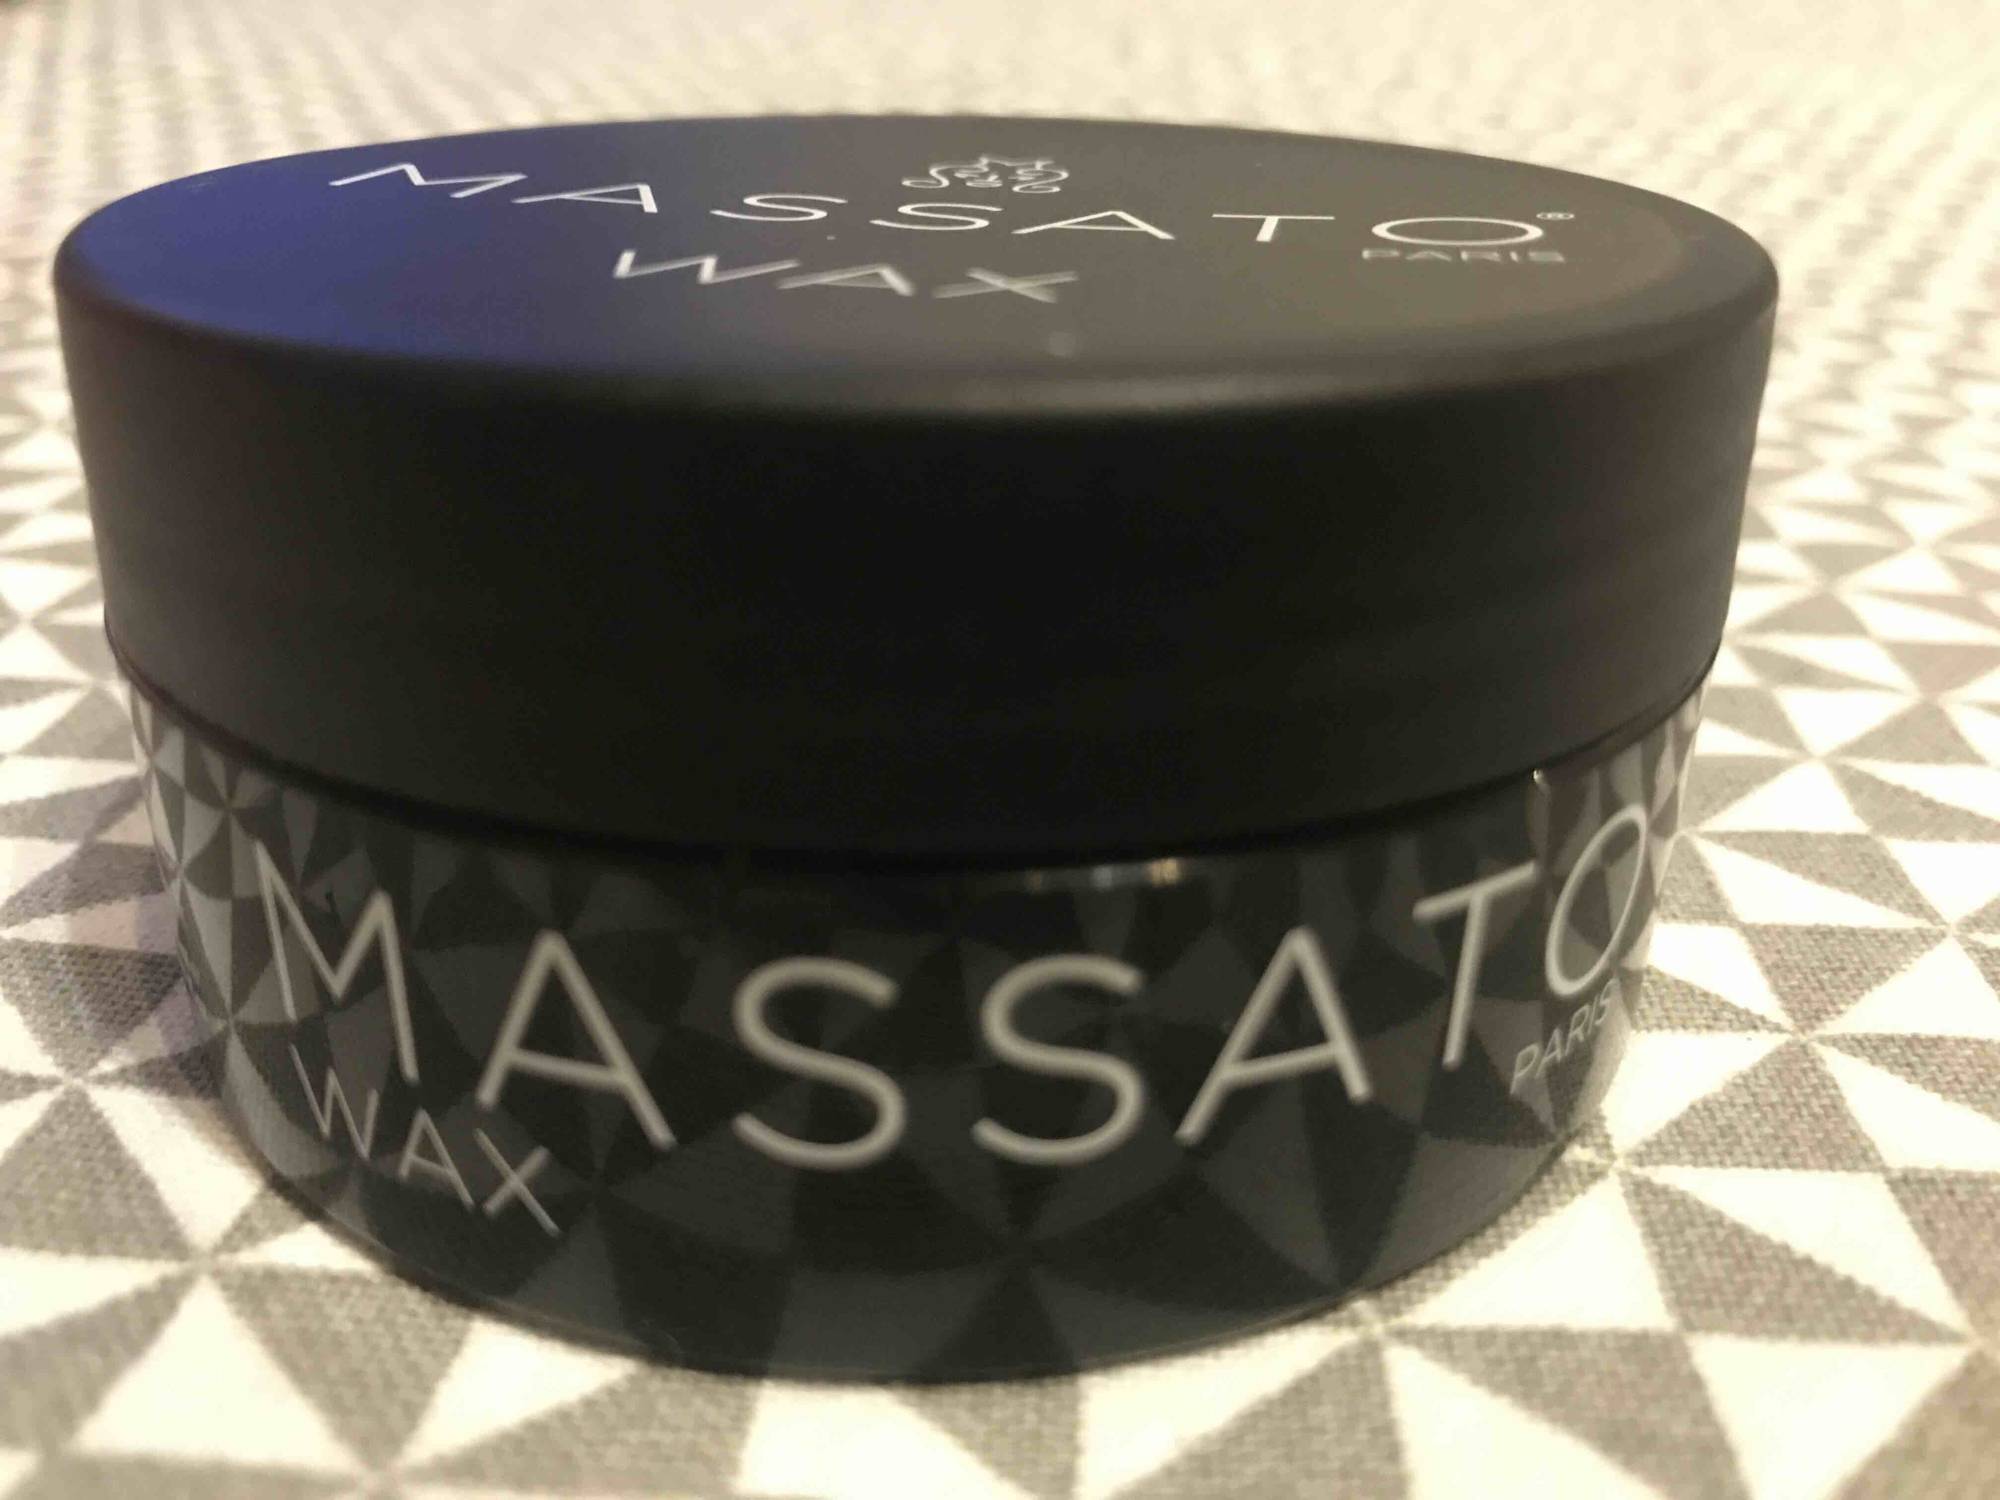 MASSATO - Wax